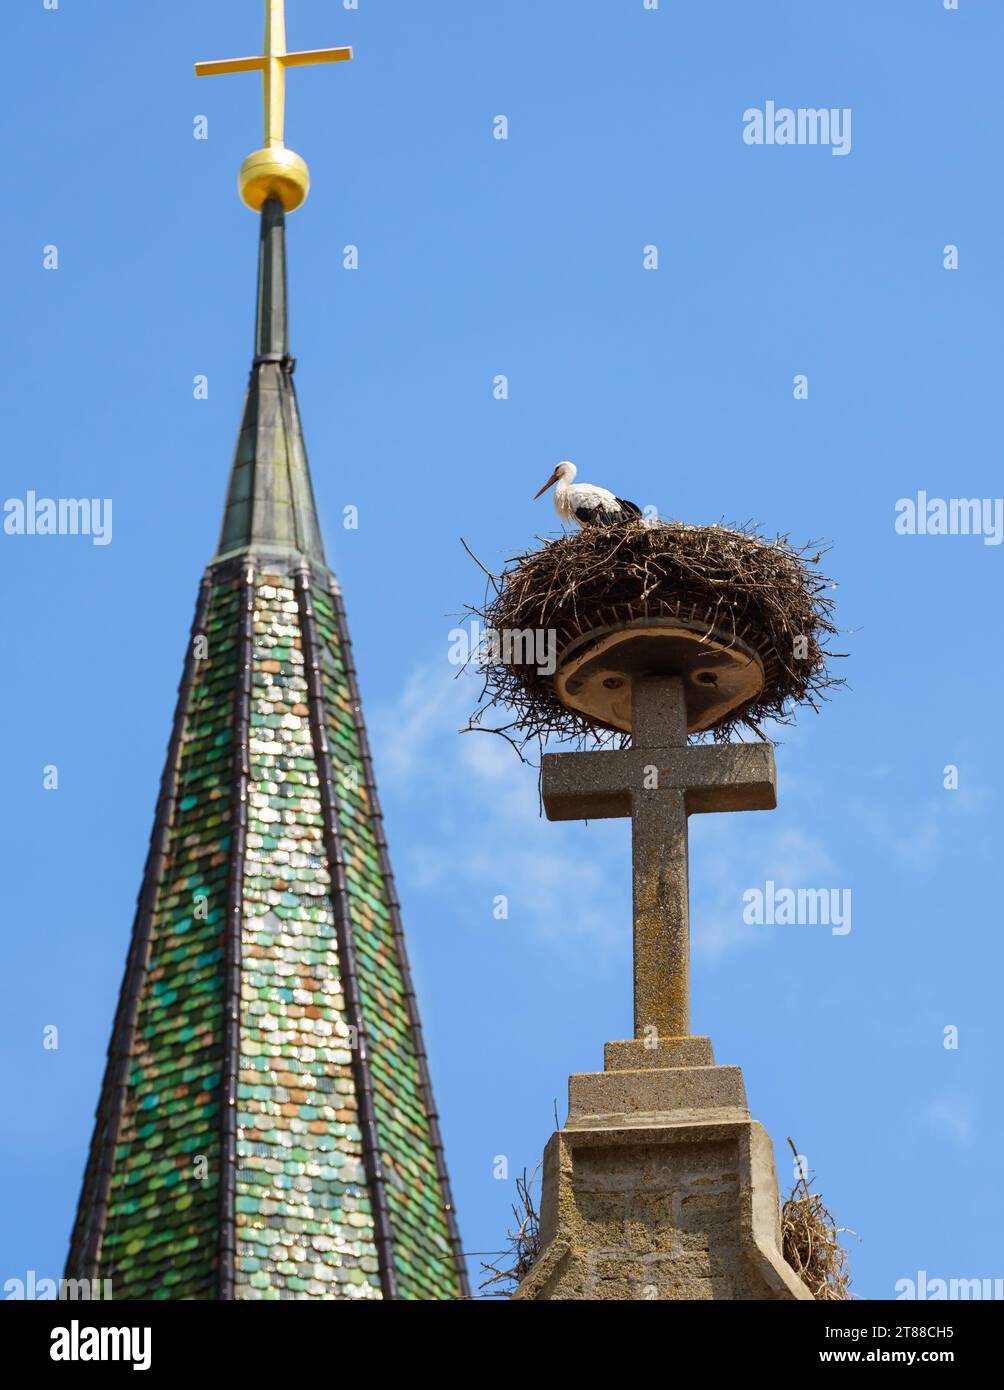 Cigogne dans le nid sur le toit de l'église, oiseau blanc se trouve sur la grande croix de pierre du toit sur fond de ciel. Vue verticale de la cigogne sauvage vivant sur le dessus du bâtiment en s. Banque D'Images